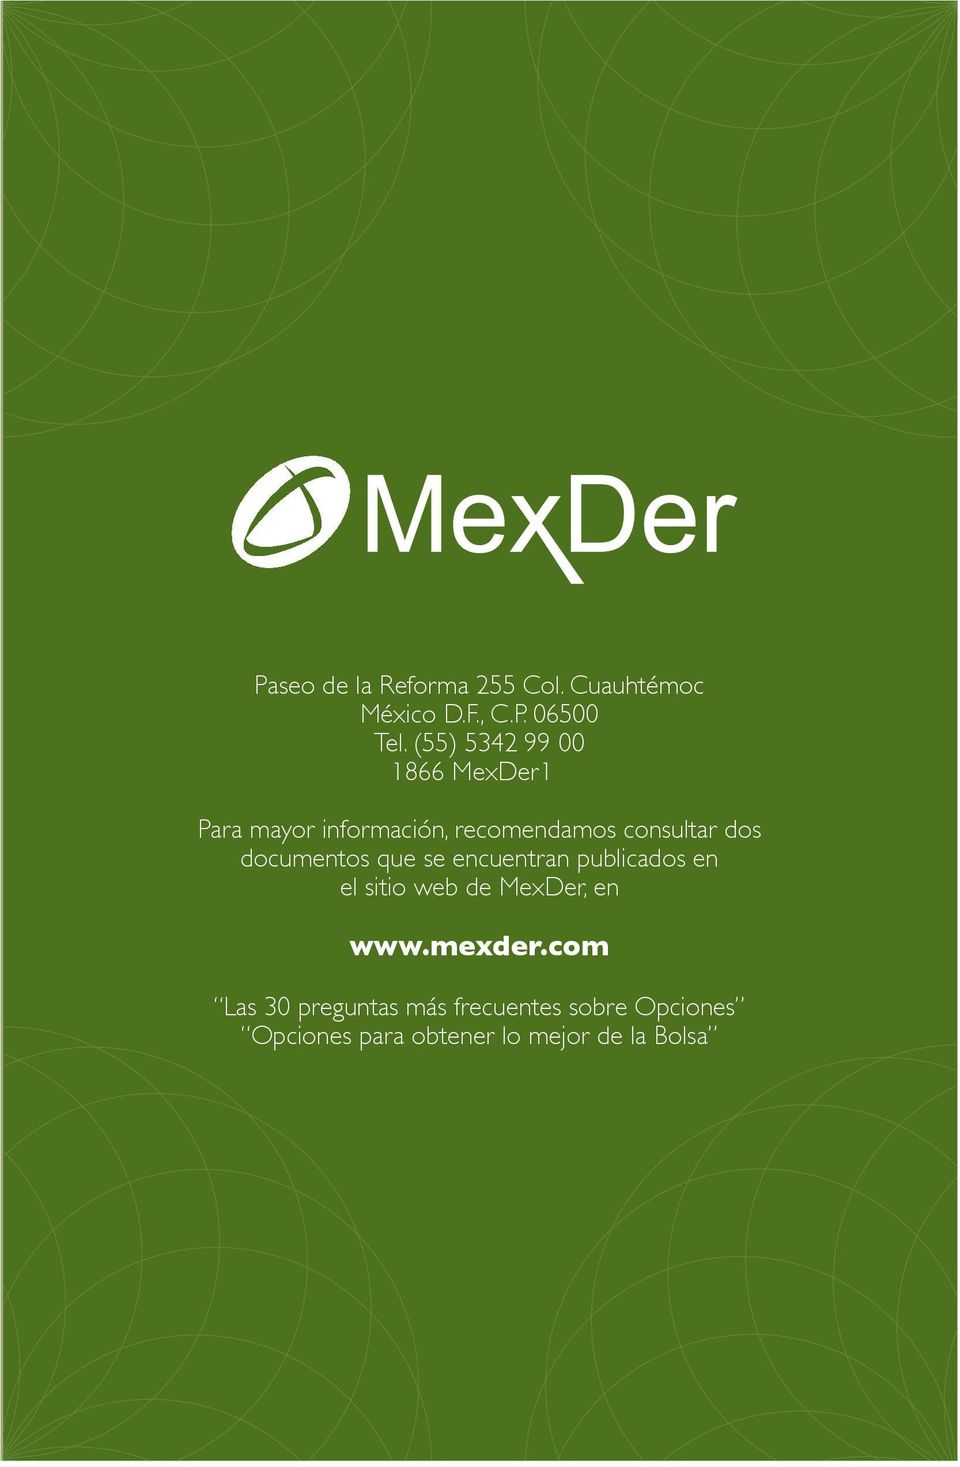 documentos que se encuentran publicados en el sitio web de MexDer, en www.mexder.